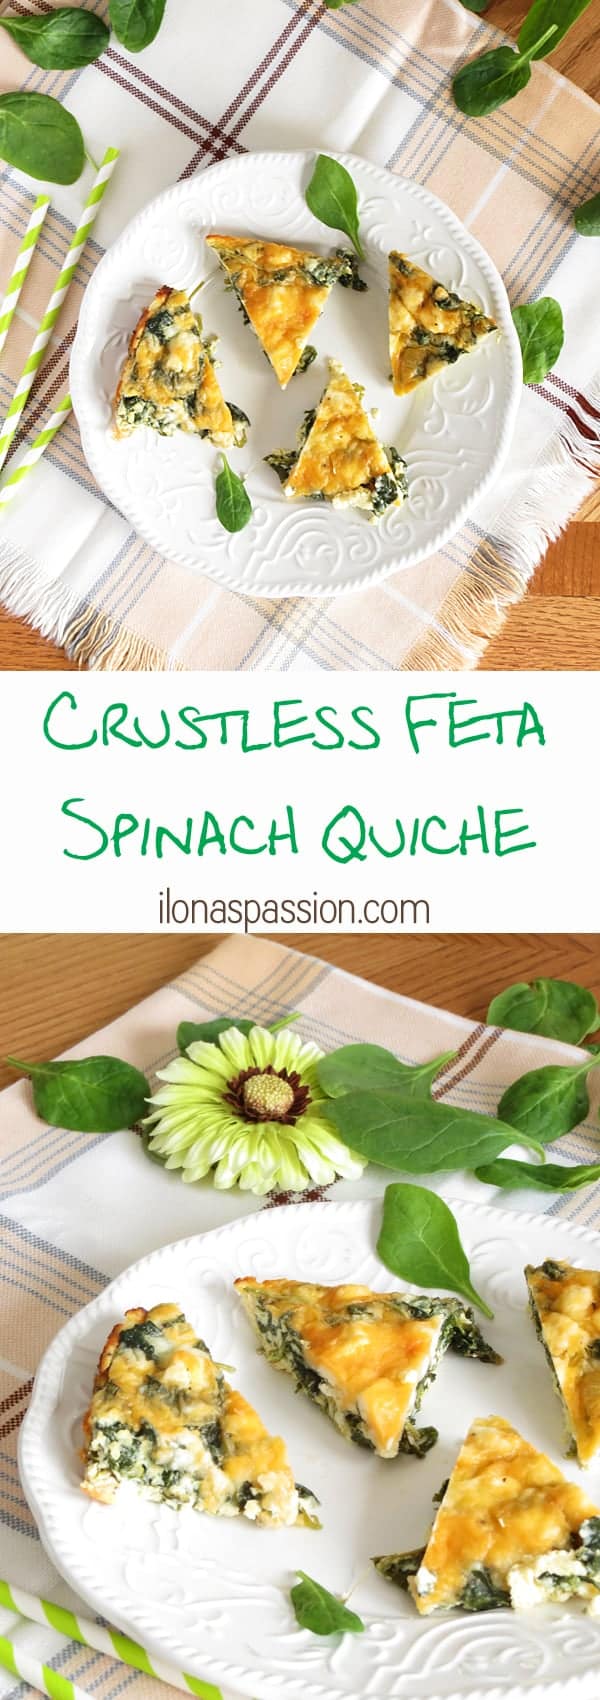 Healthy Spinach Feta Quiche by ilonaspassion.com